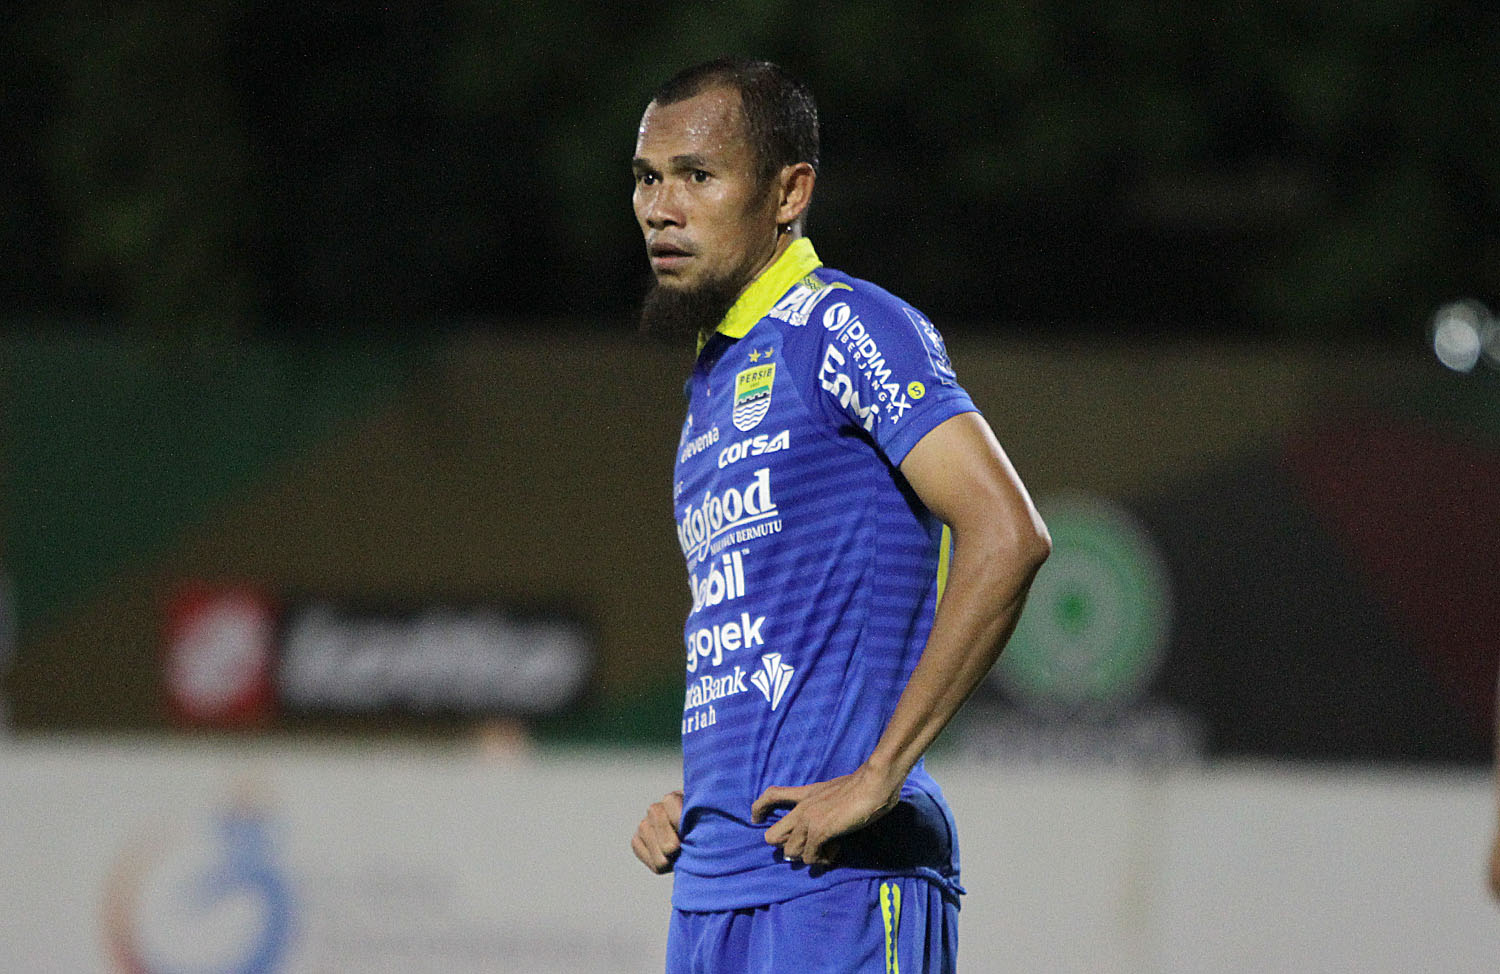 Kapten Persib Bandung Tak Ingin Pusing Pikirkan Liga 1 2020